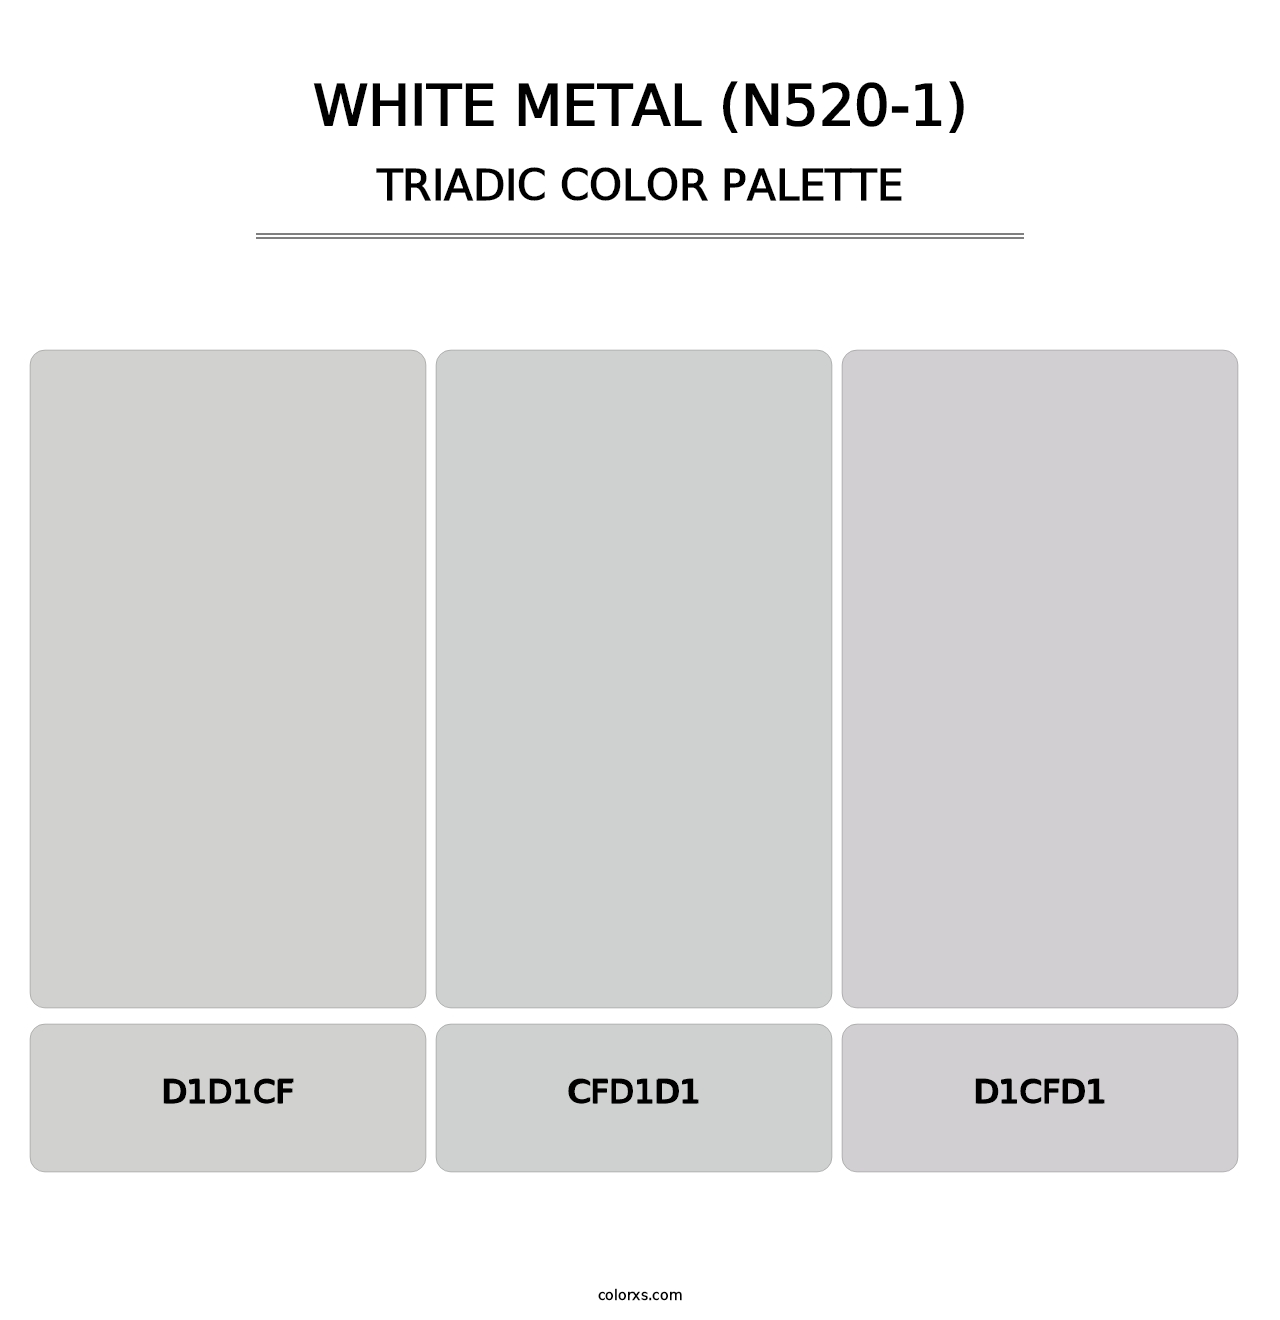 White Metal (N520-1) - Triadic Color Palette